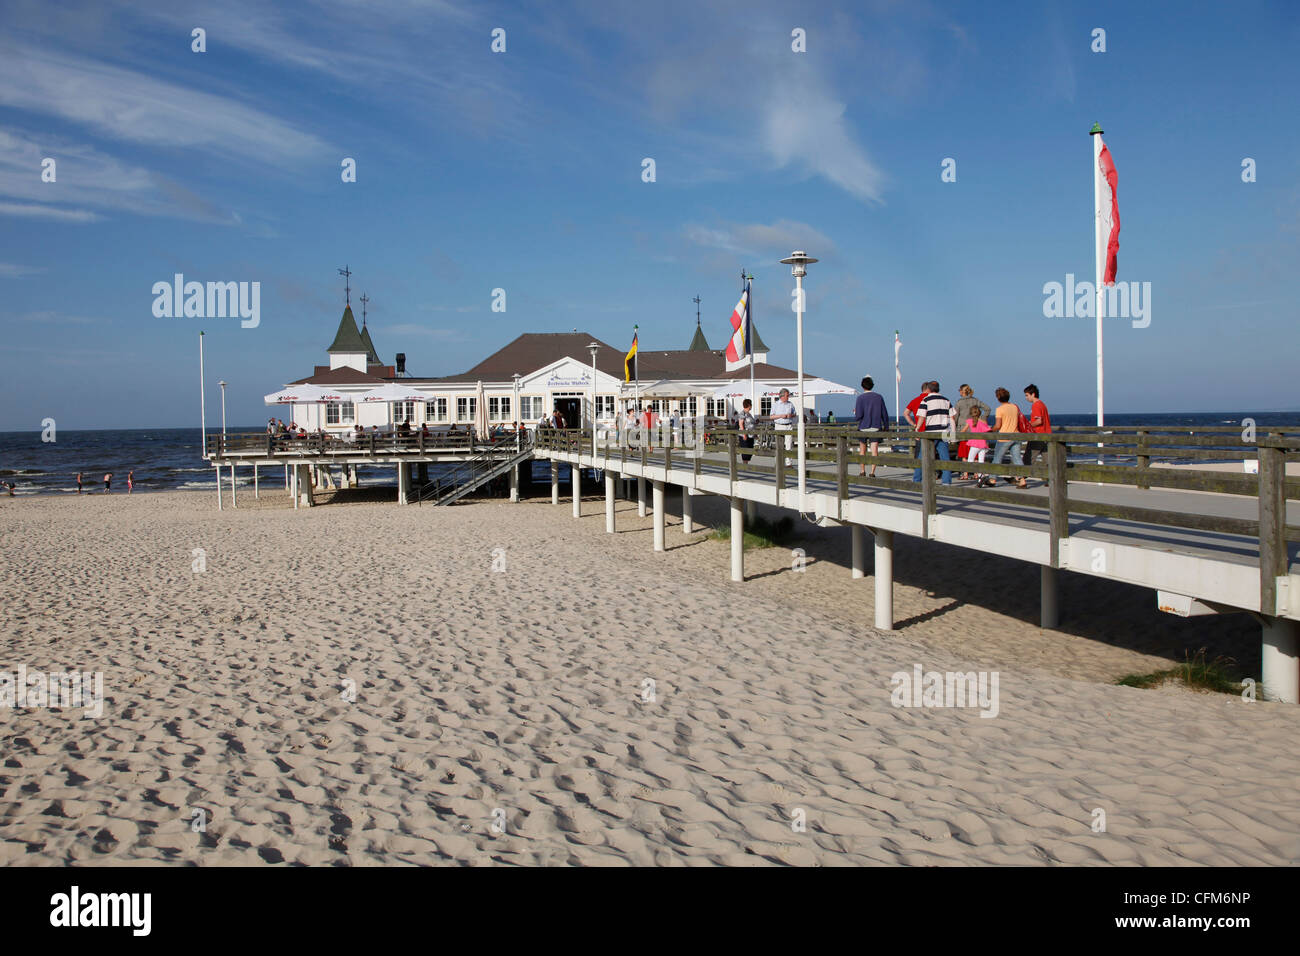 El balneario del Mar Báltico de Ahlbeck, Usedom, Mecklemburgo-Pomerania Occidental, Alemania, Europa Foto de stock